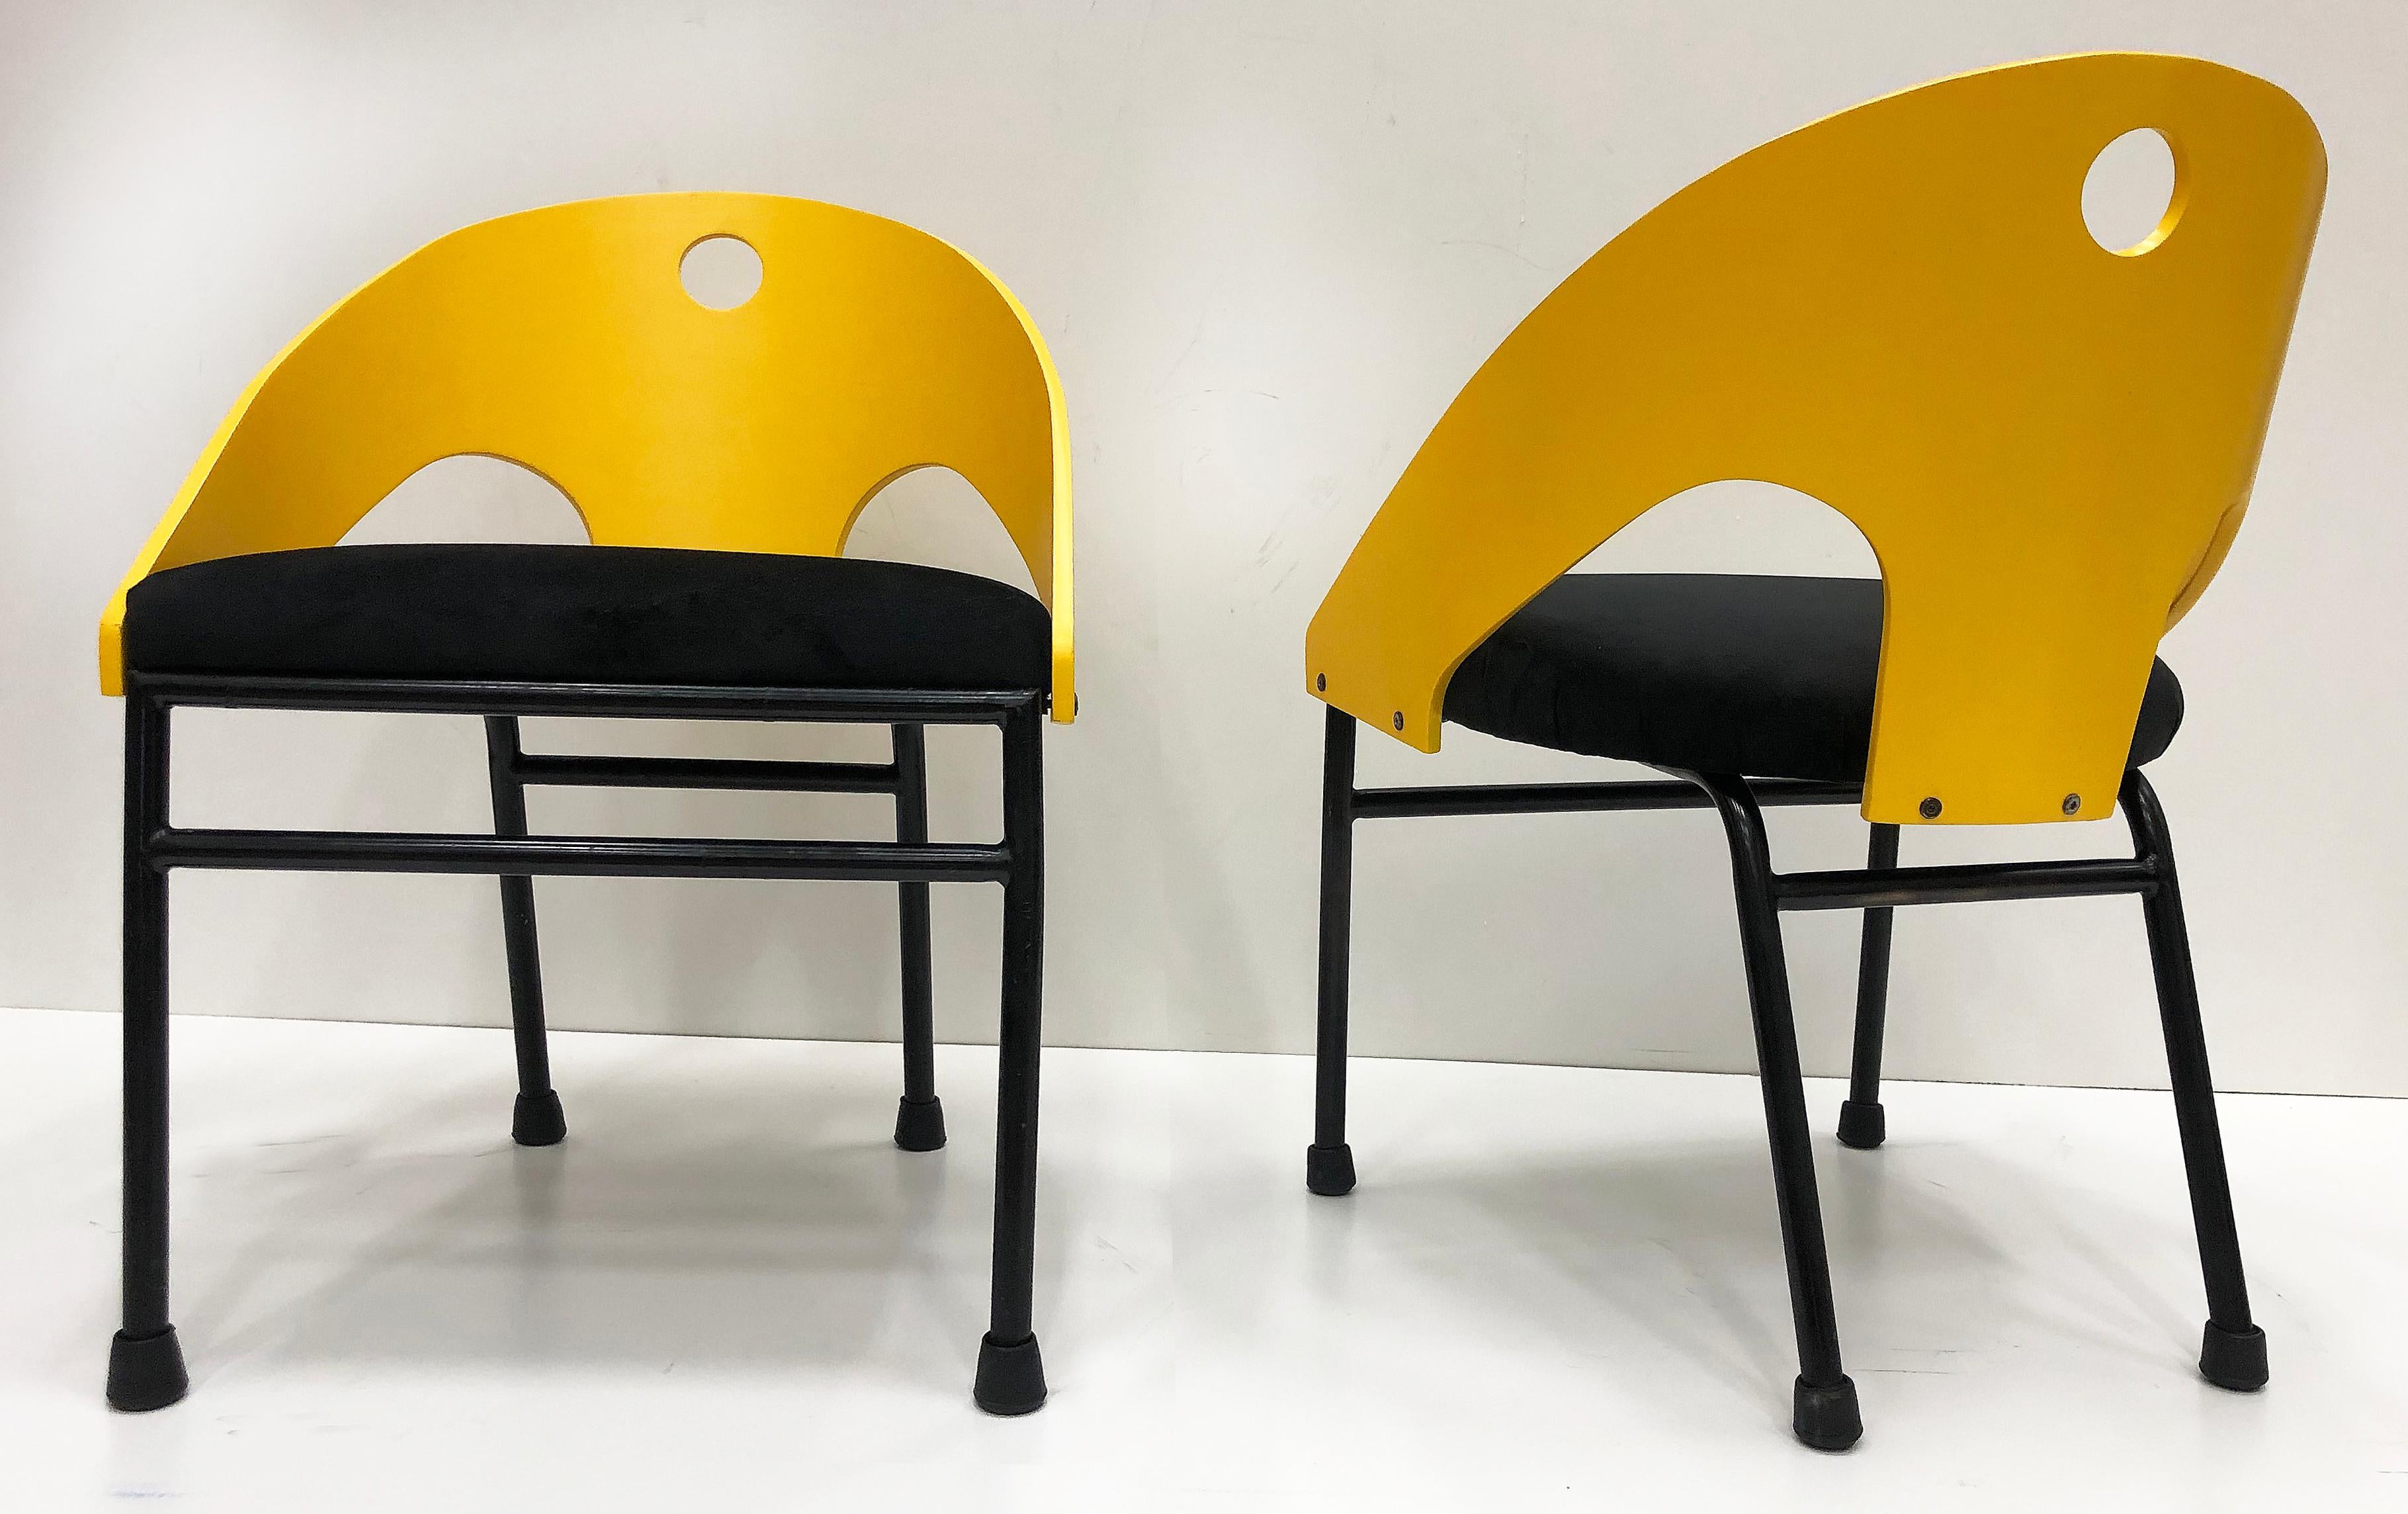 chaises post-modernes des années 1980 de style Memphis - 3 paires disponibles

Nous proposons à la vente une paire de chaises d'appoint post-moderne des années 1980 de style Memphis avec des dessus en bois courbé et des bases en métal. La paire a